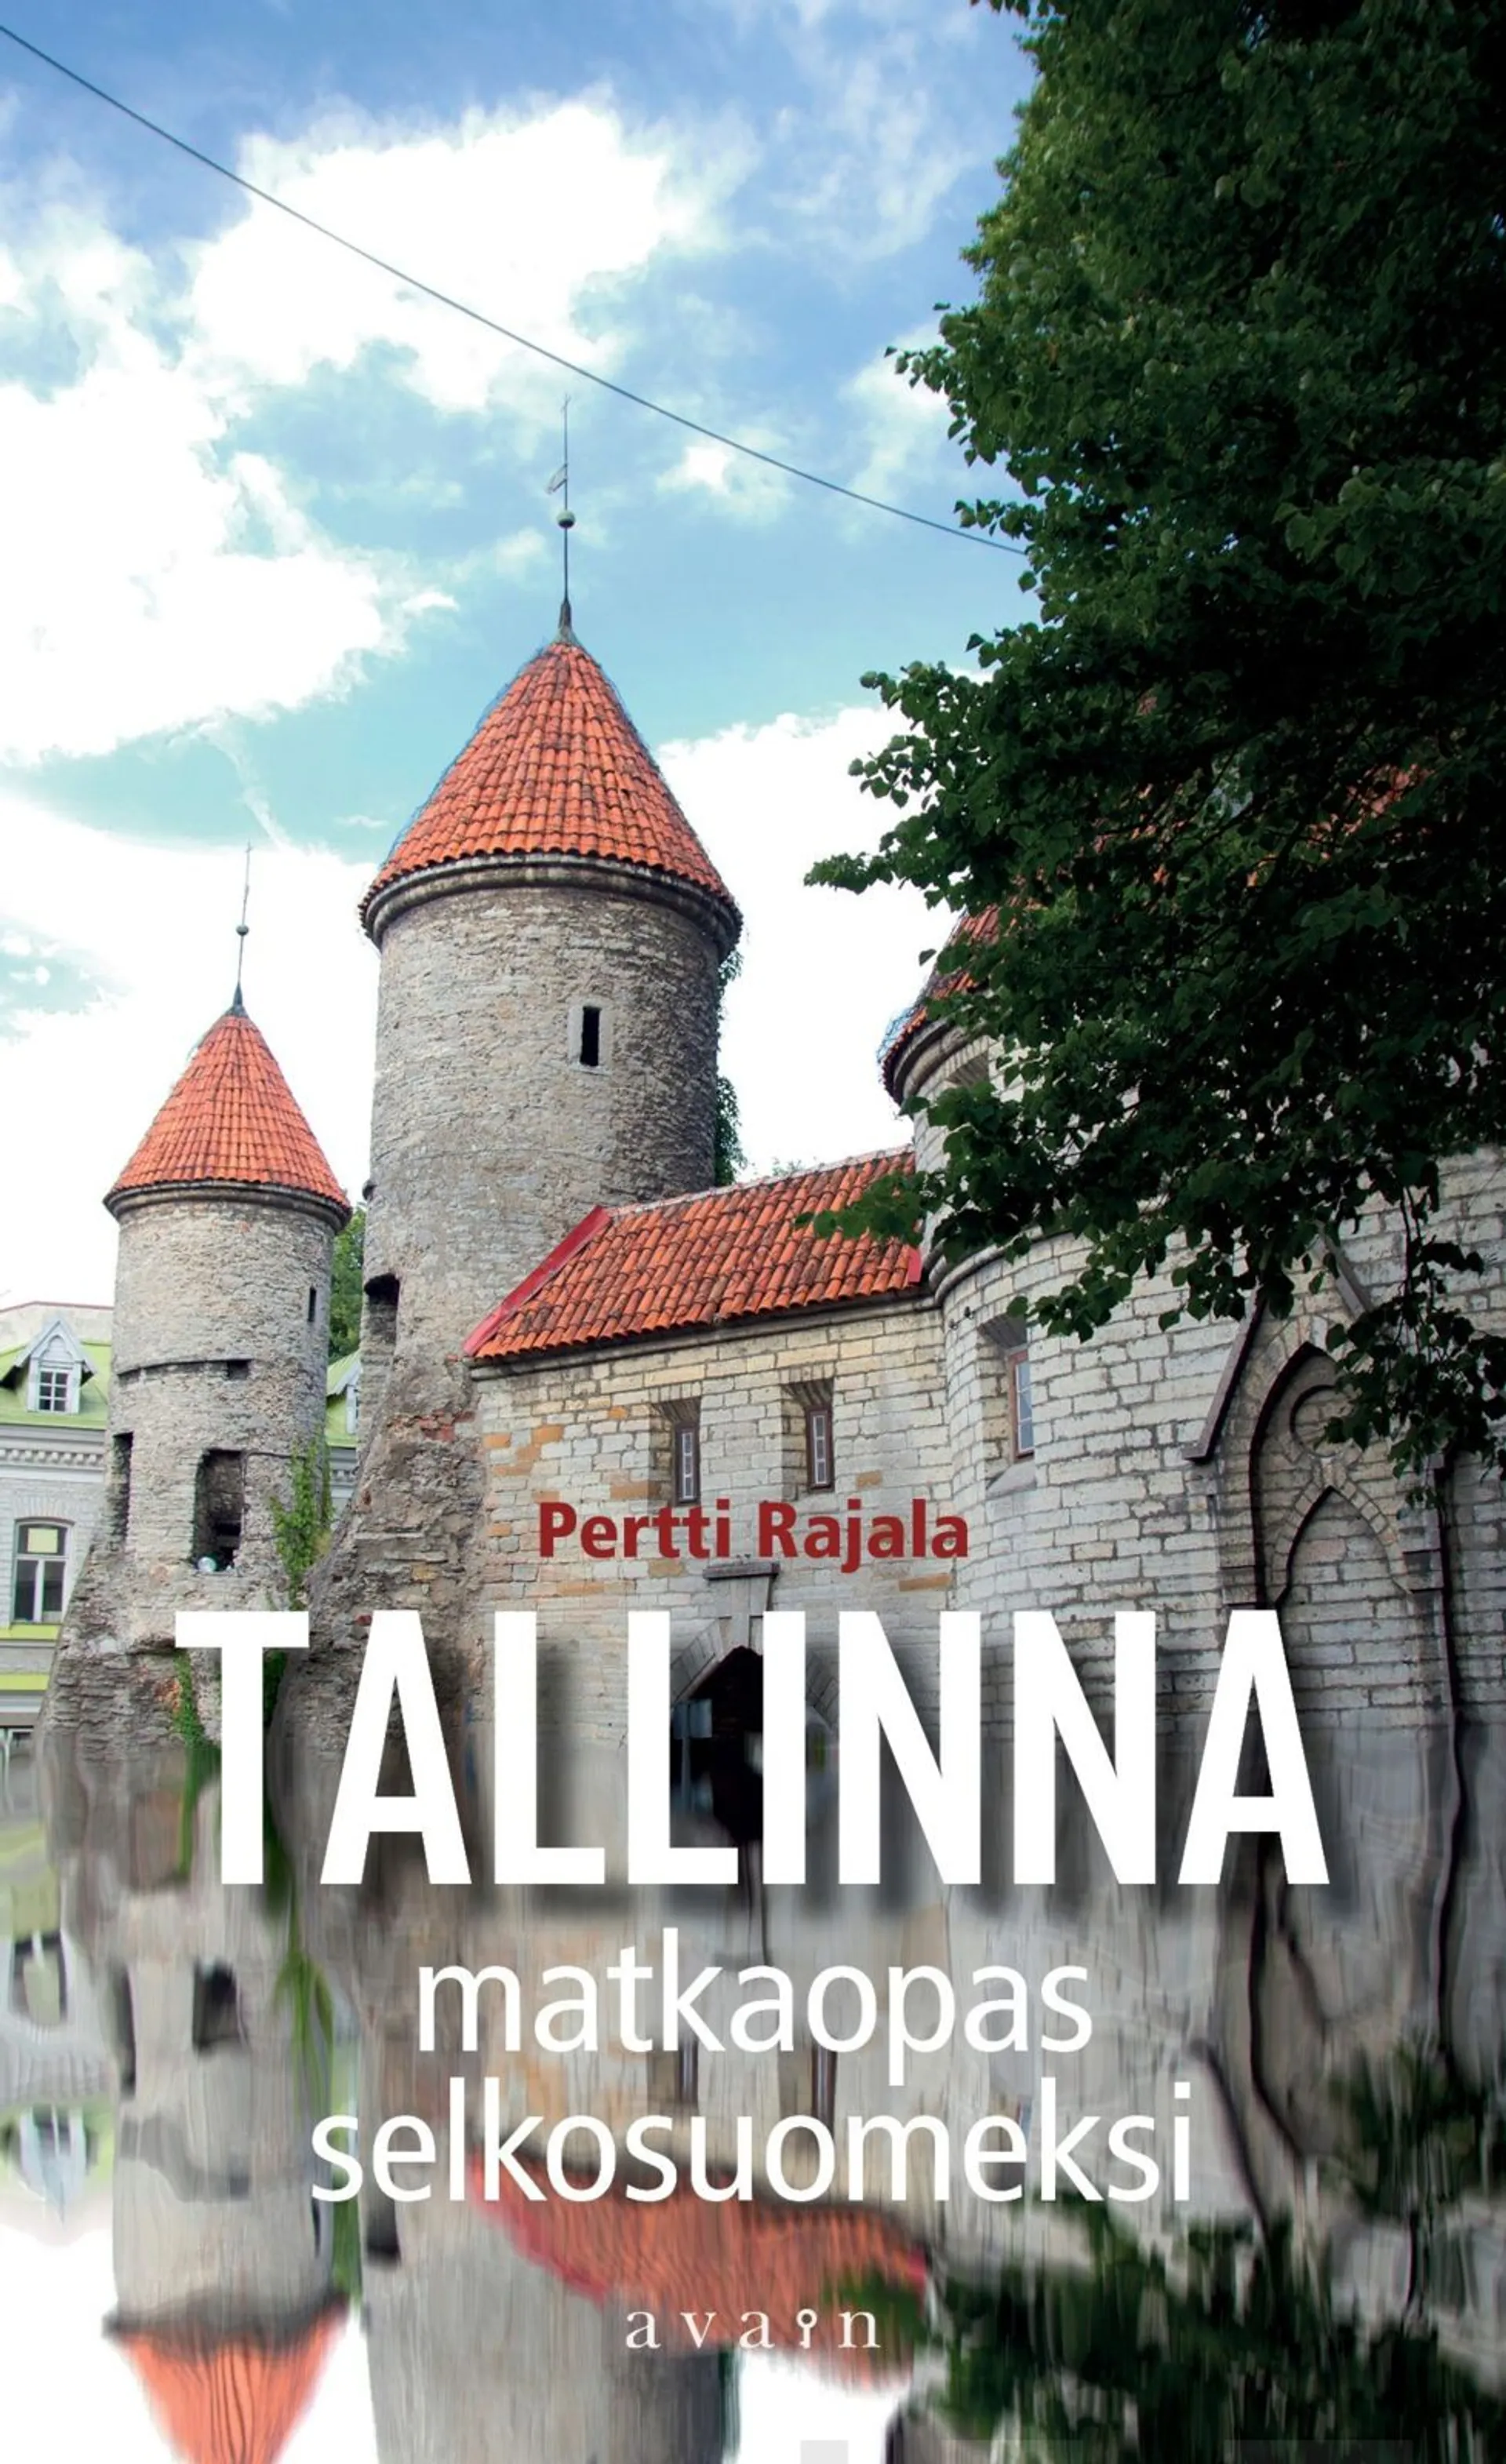 Rajala, Tervemenoa Tallinnaan!